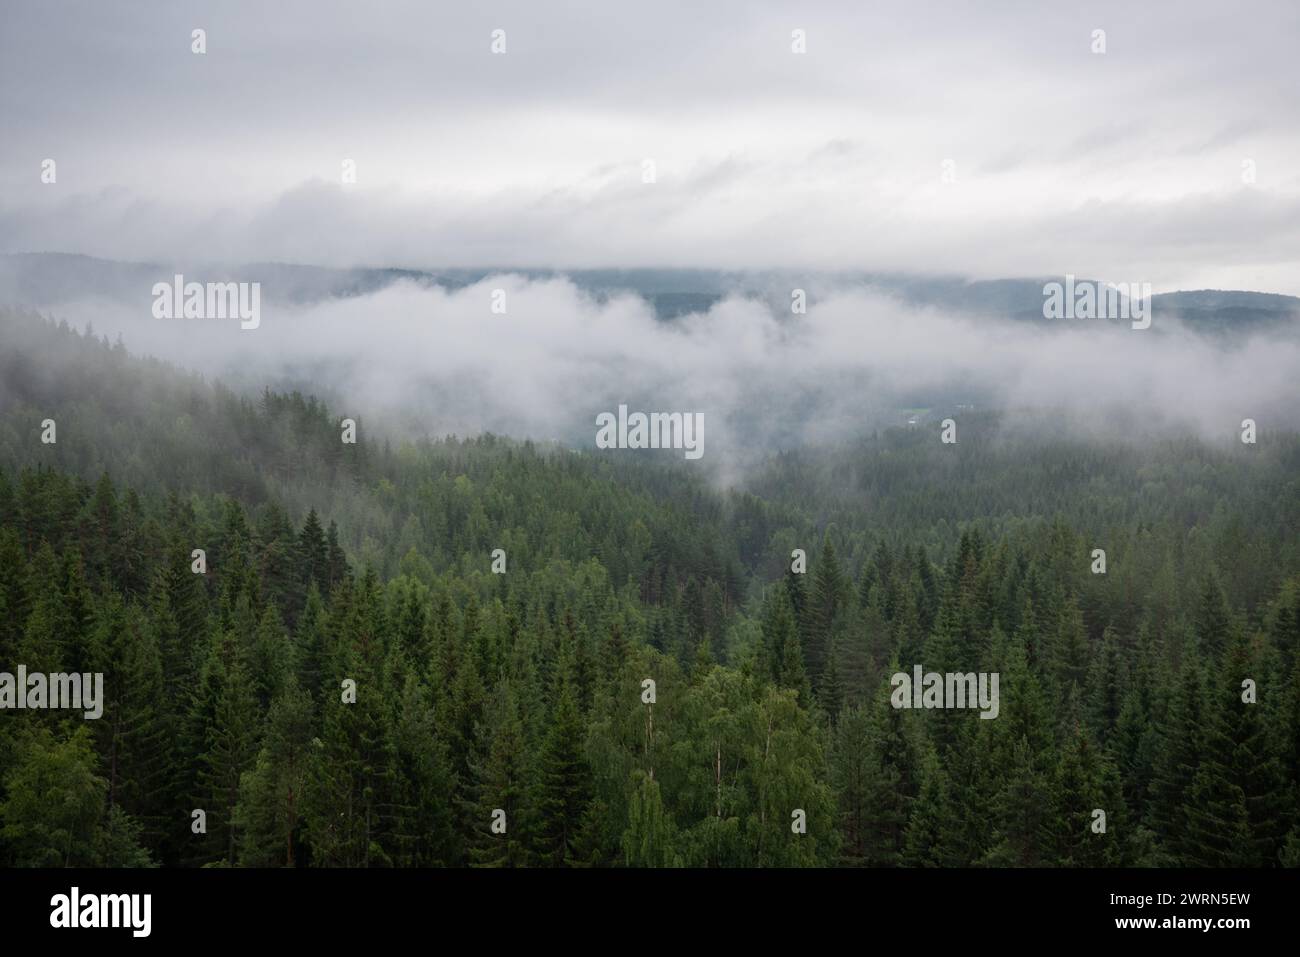 Landschaft mit grünem Fichtenwald in weißem Nebel, wo norwegische Berge und Fjorde in der Ferne zu sehen sind. Stockfoto